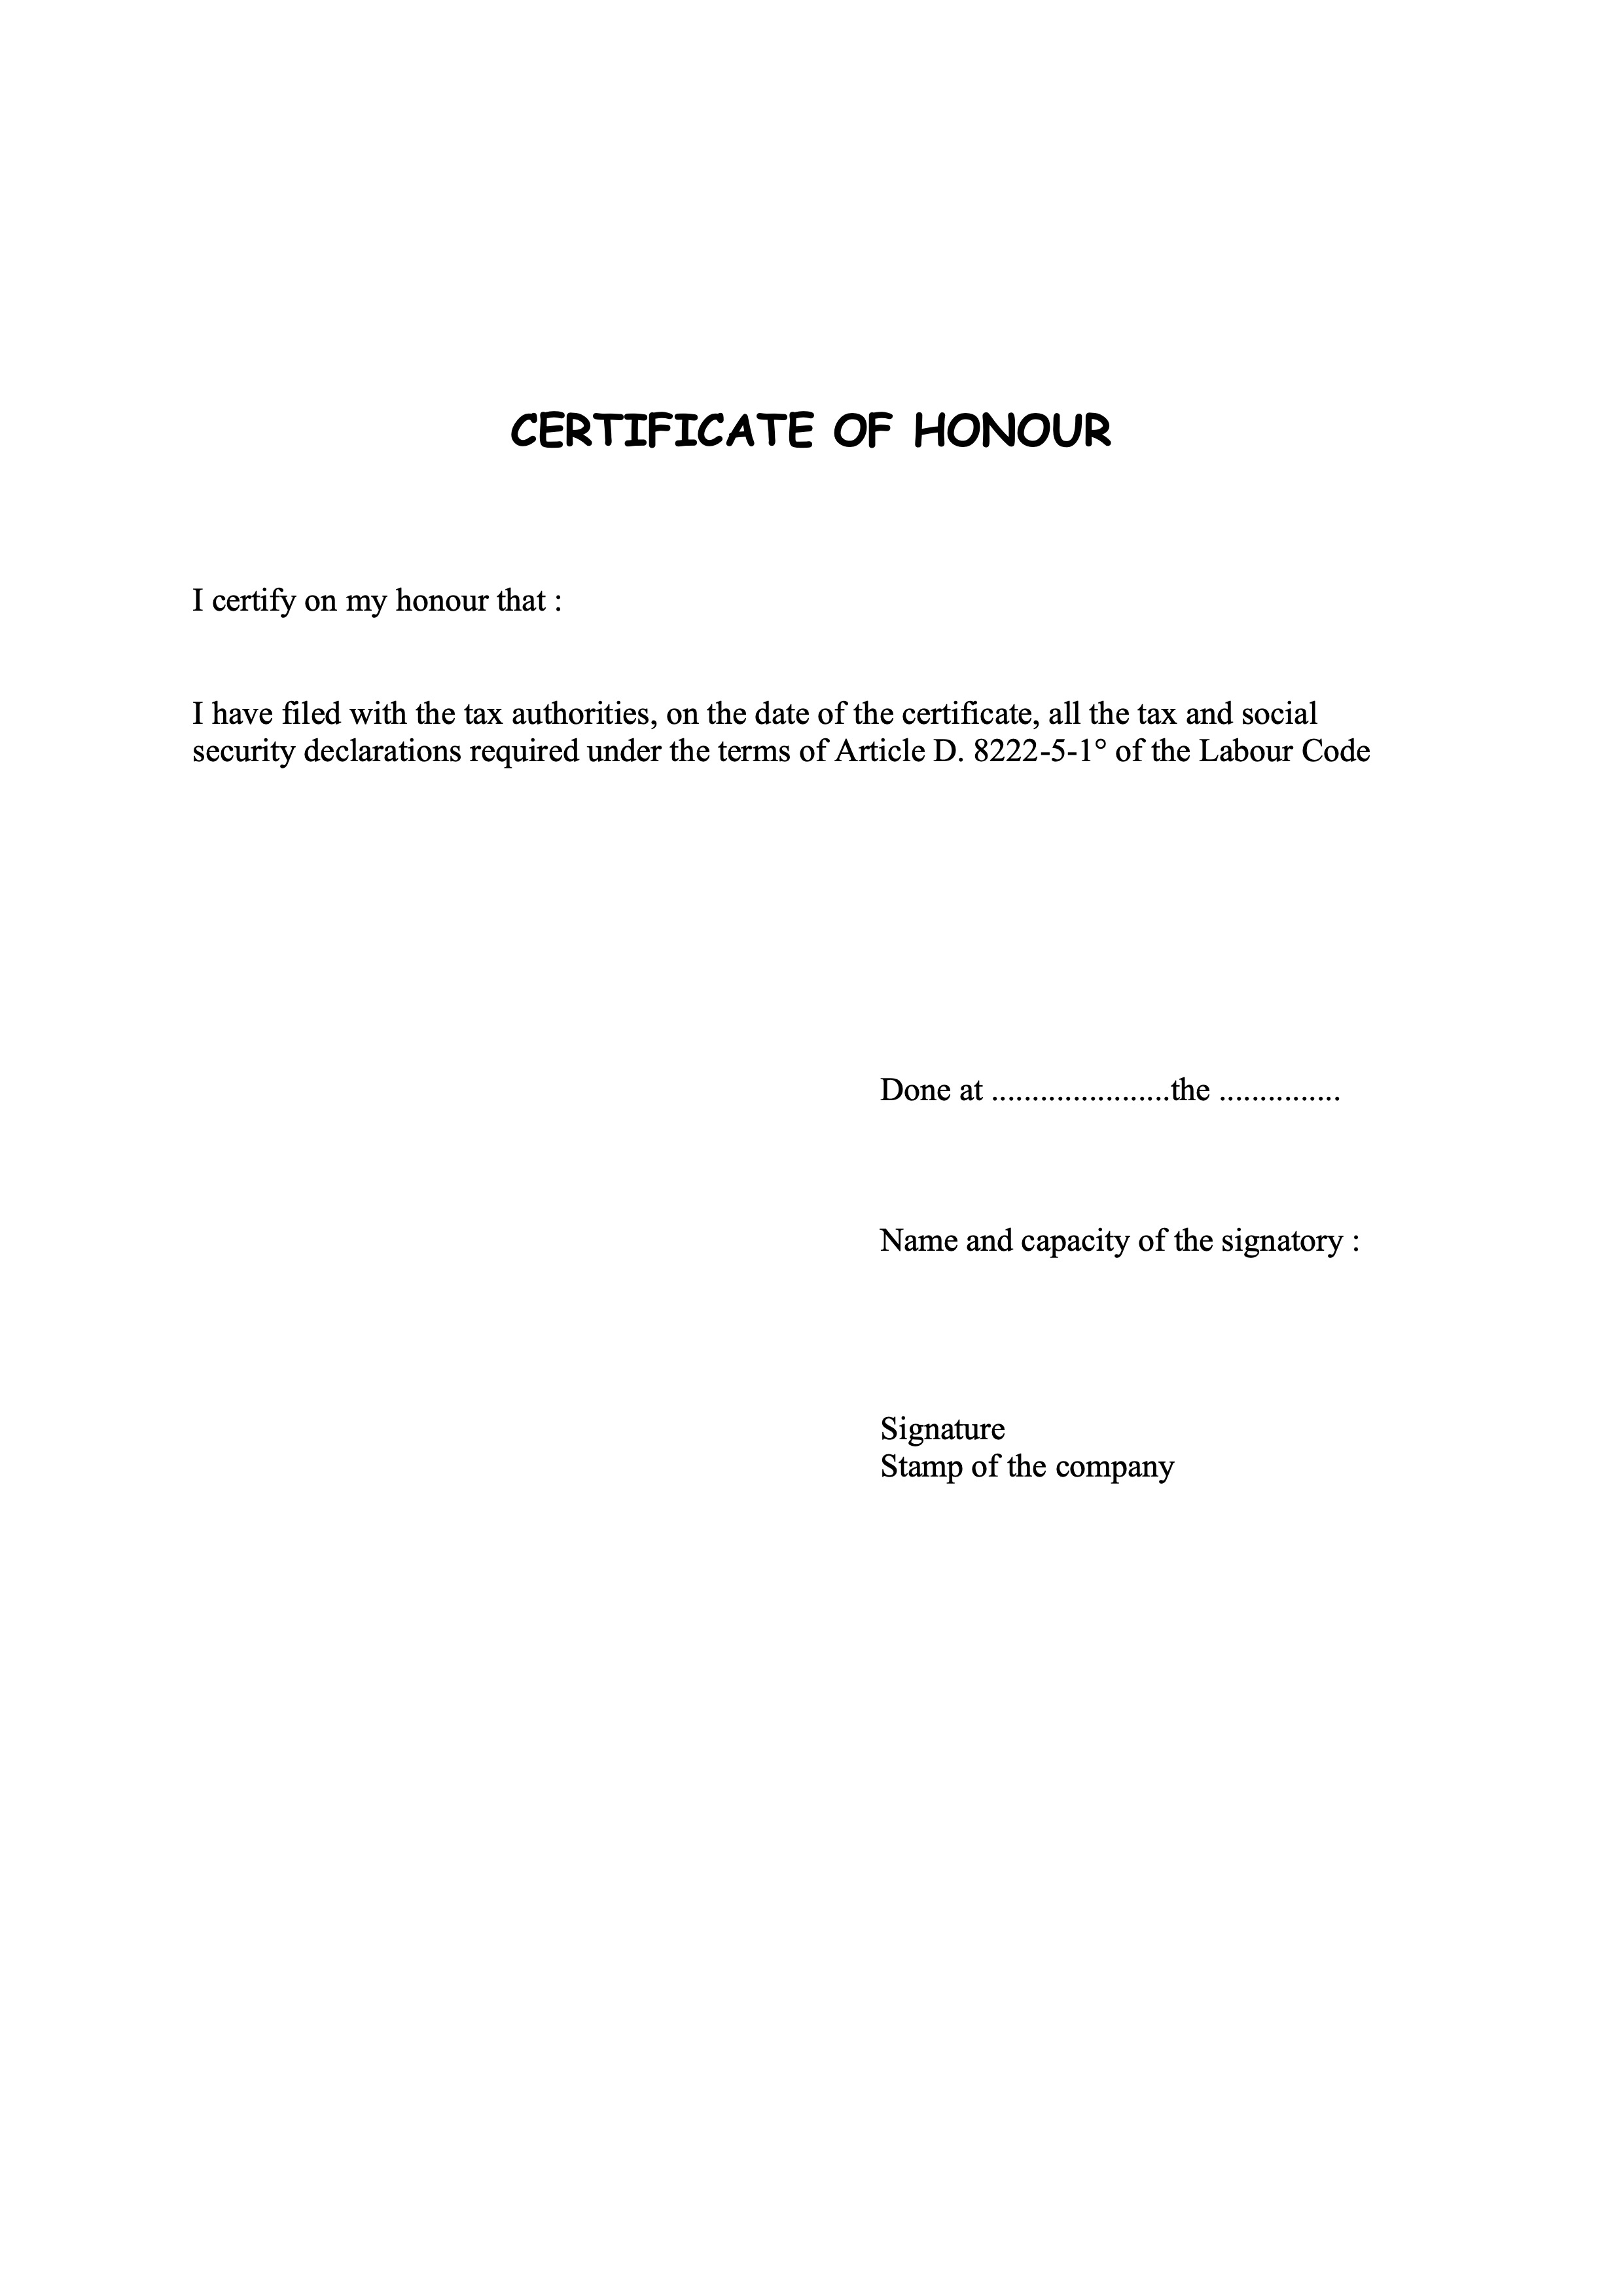 Certificate_of_honour_for_filing_all_statutory_tax_returns.jpg